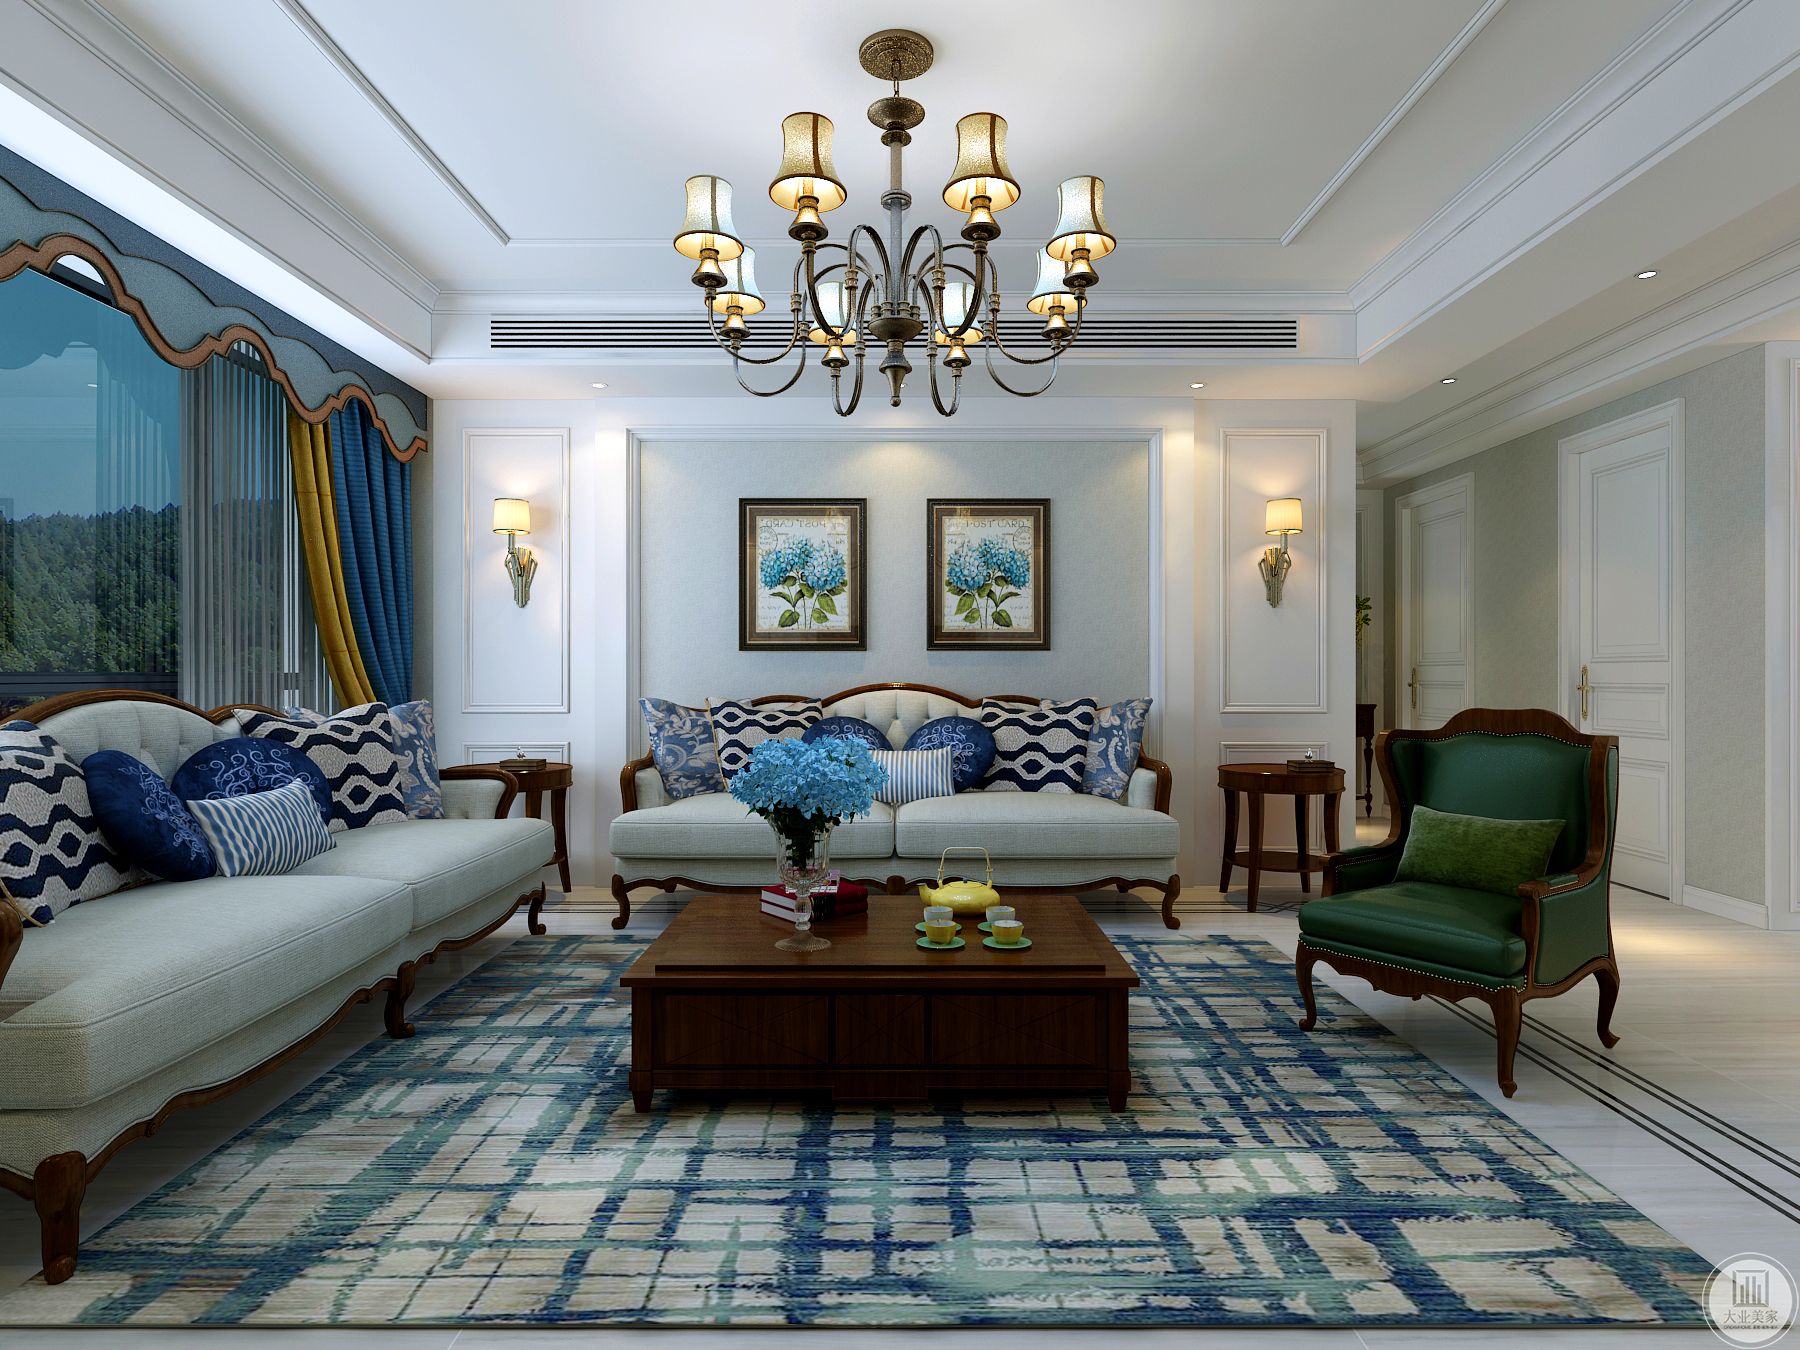 客厅 软装上采用了统一木色和面料颜色。突出实木和亚麻材质的质朴和舒适。